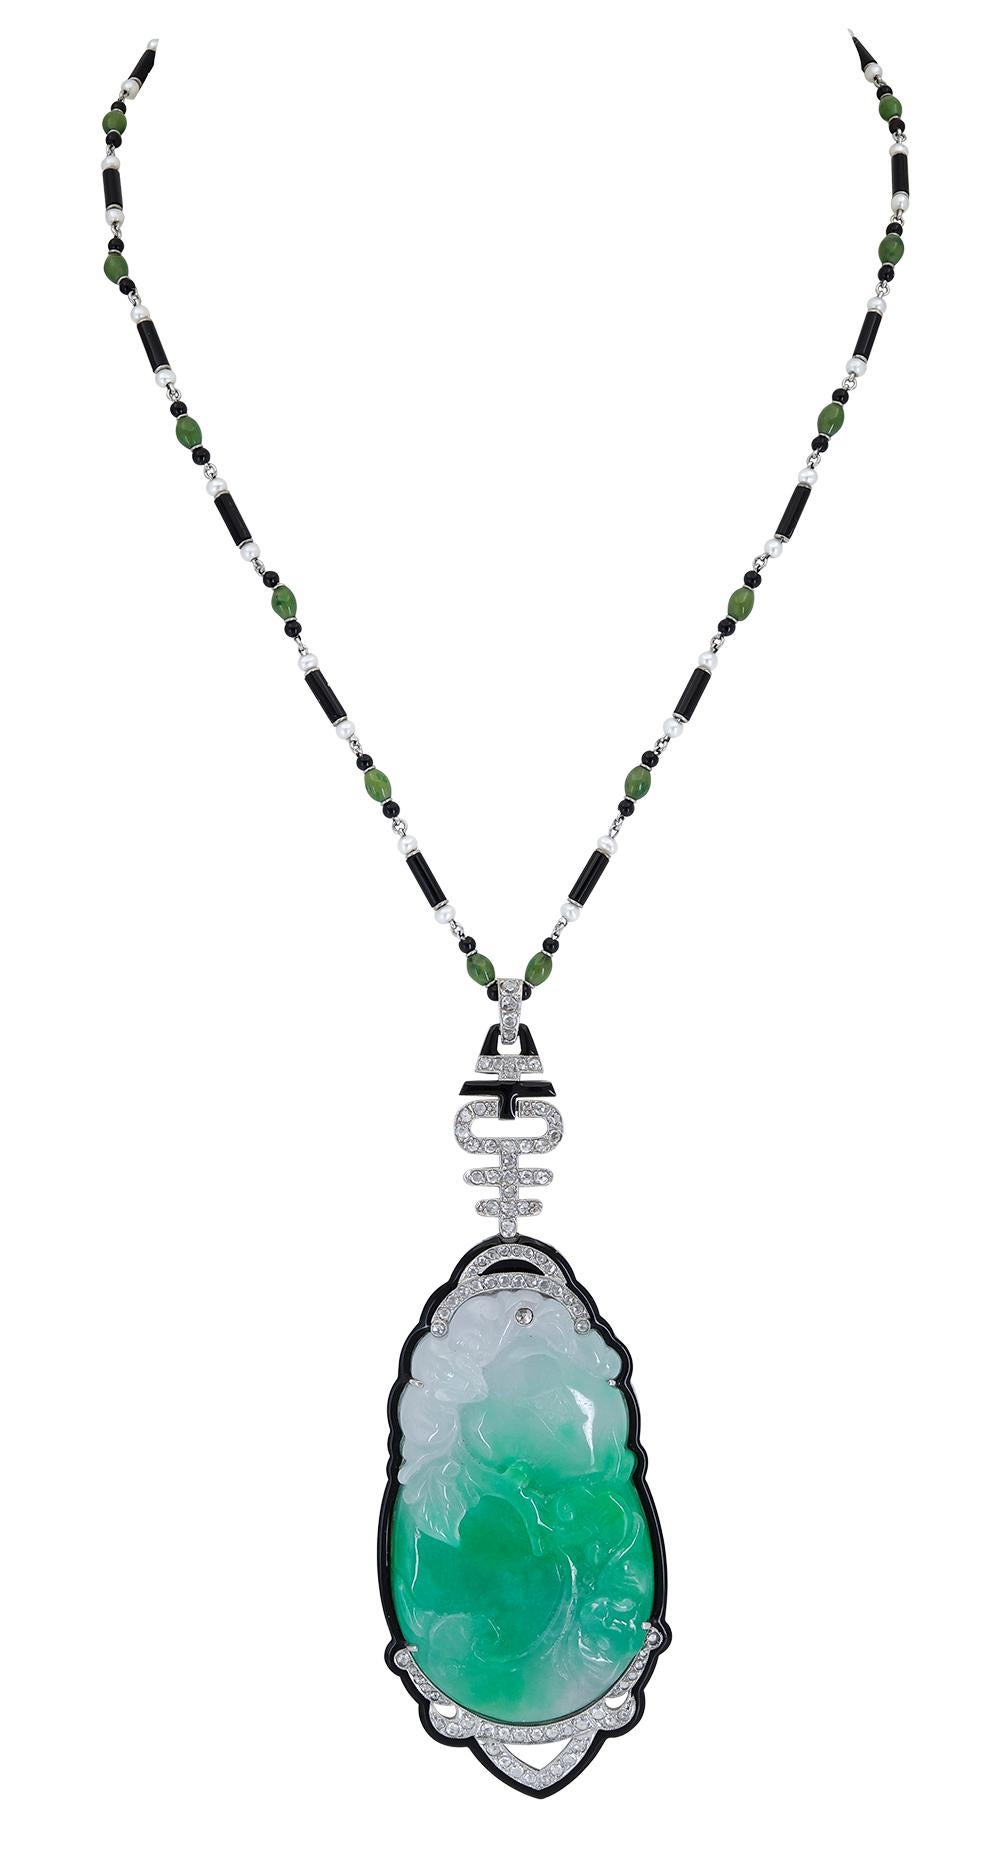 Ce pendentif en jade sculpté à la main est entouré d'onyx et de diamants. Suspendu à une belle chaîne faite de petites perles, de jade et d'onyx. Une magnifique pièce de joaillerie.

Dimensions du pendentif : 4.00 po x 1,375 po
Longueur de la chaîne